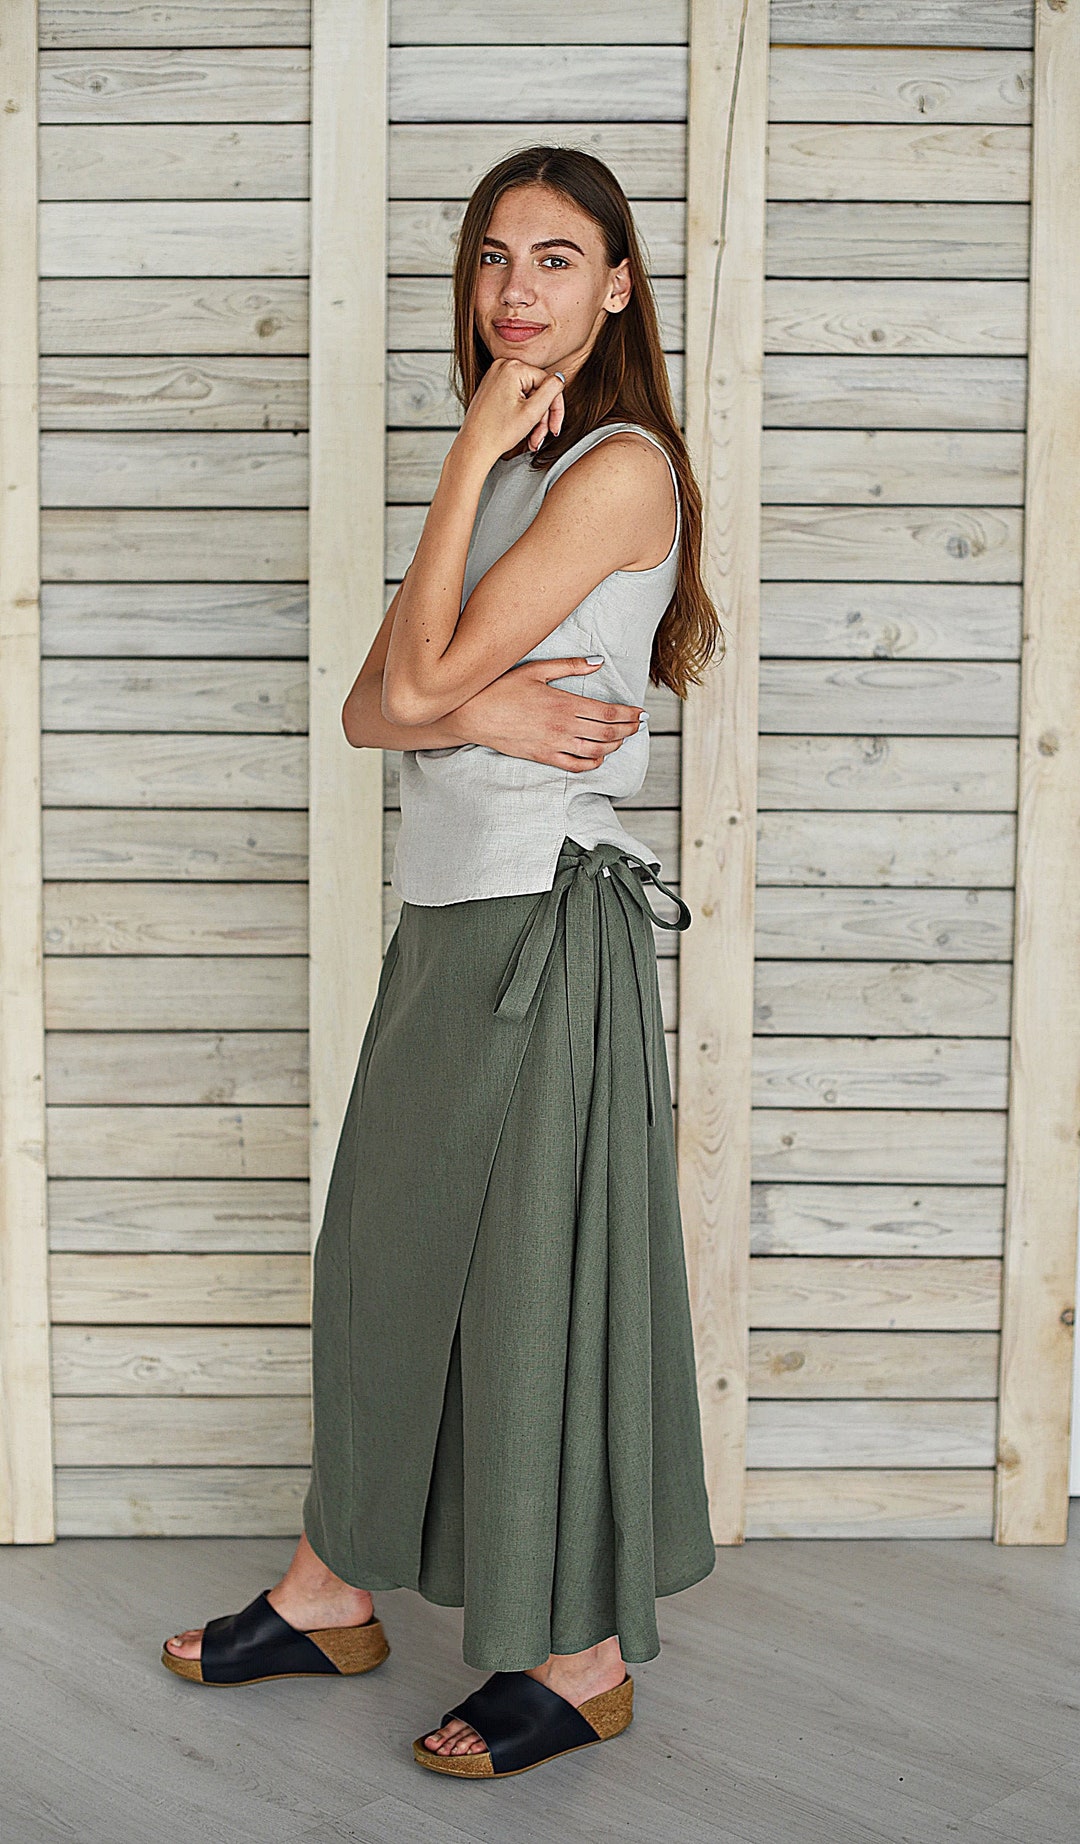 Linen Flare Skirt / Long Linen Skirt / Linen Skirt With Ties / - Etsy